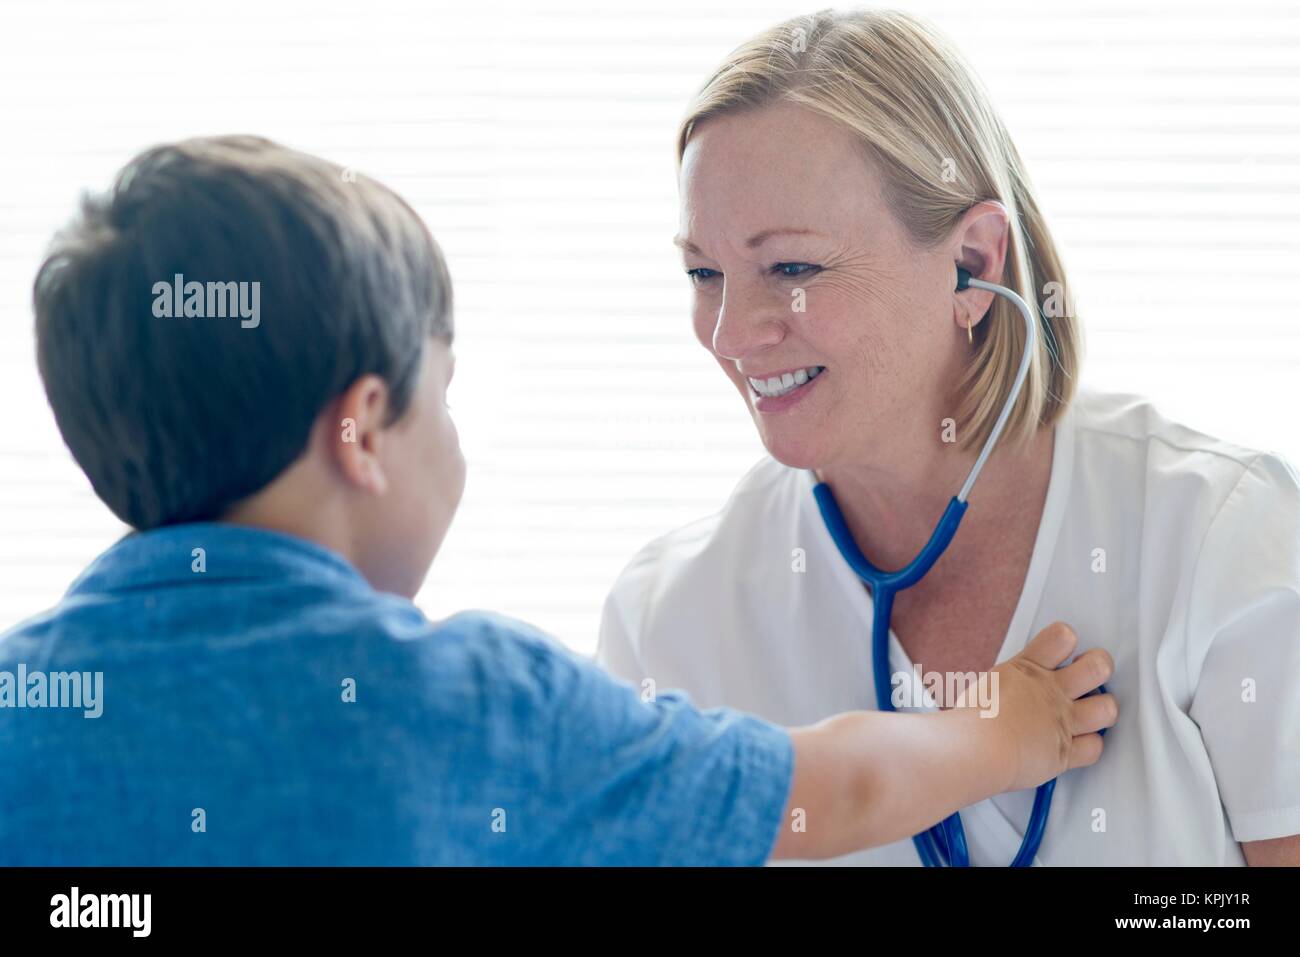 Nurse wearing stethoscope smiling towards young boy. Stock Photo